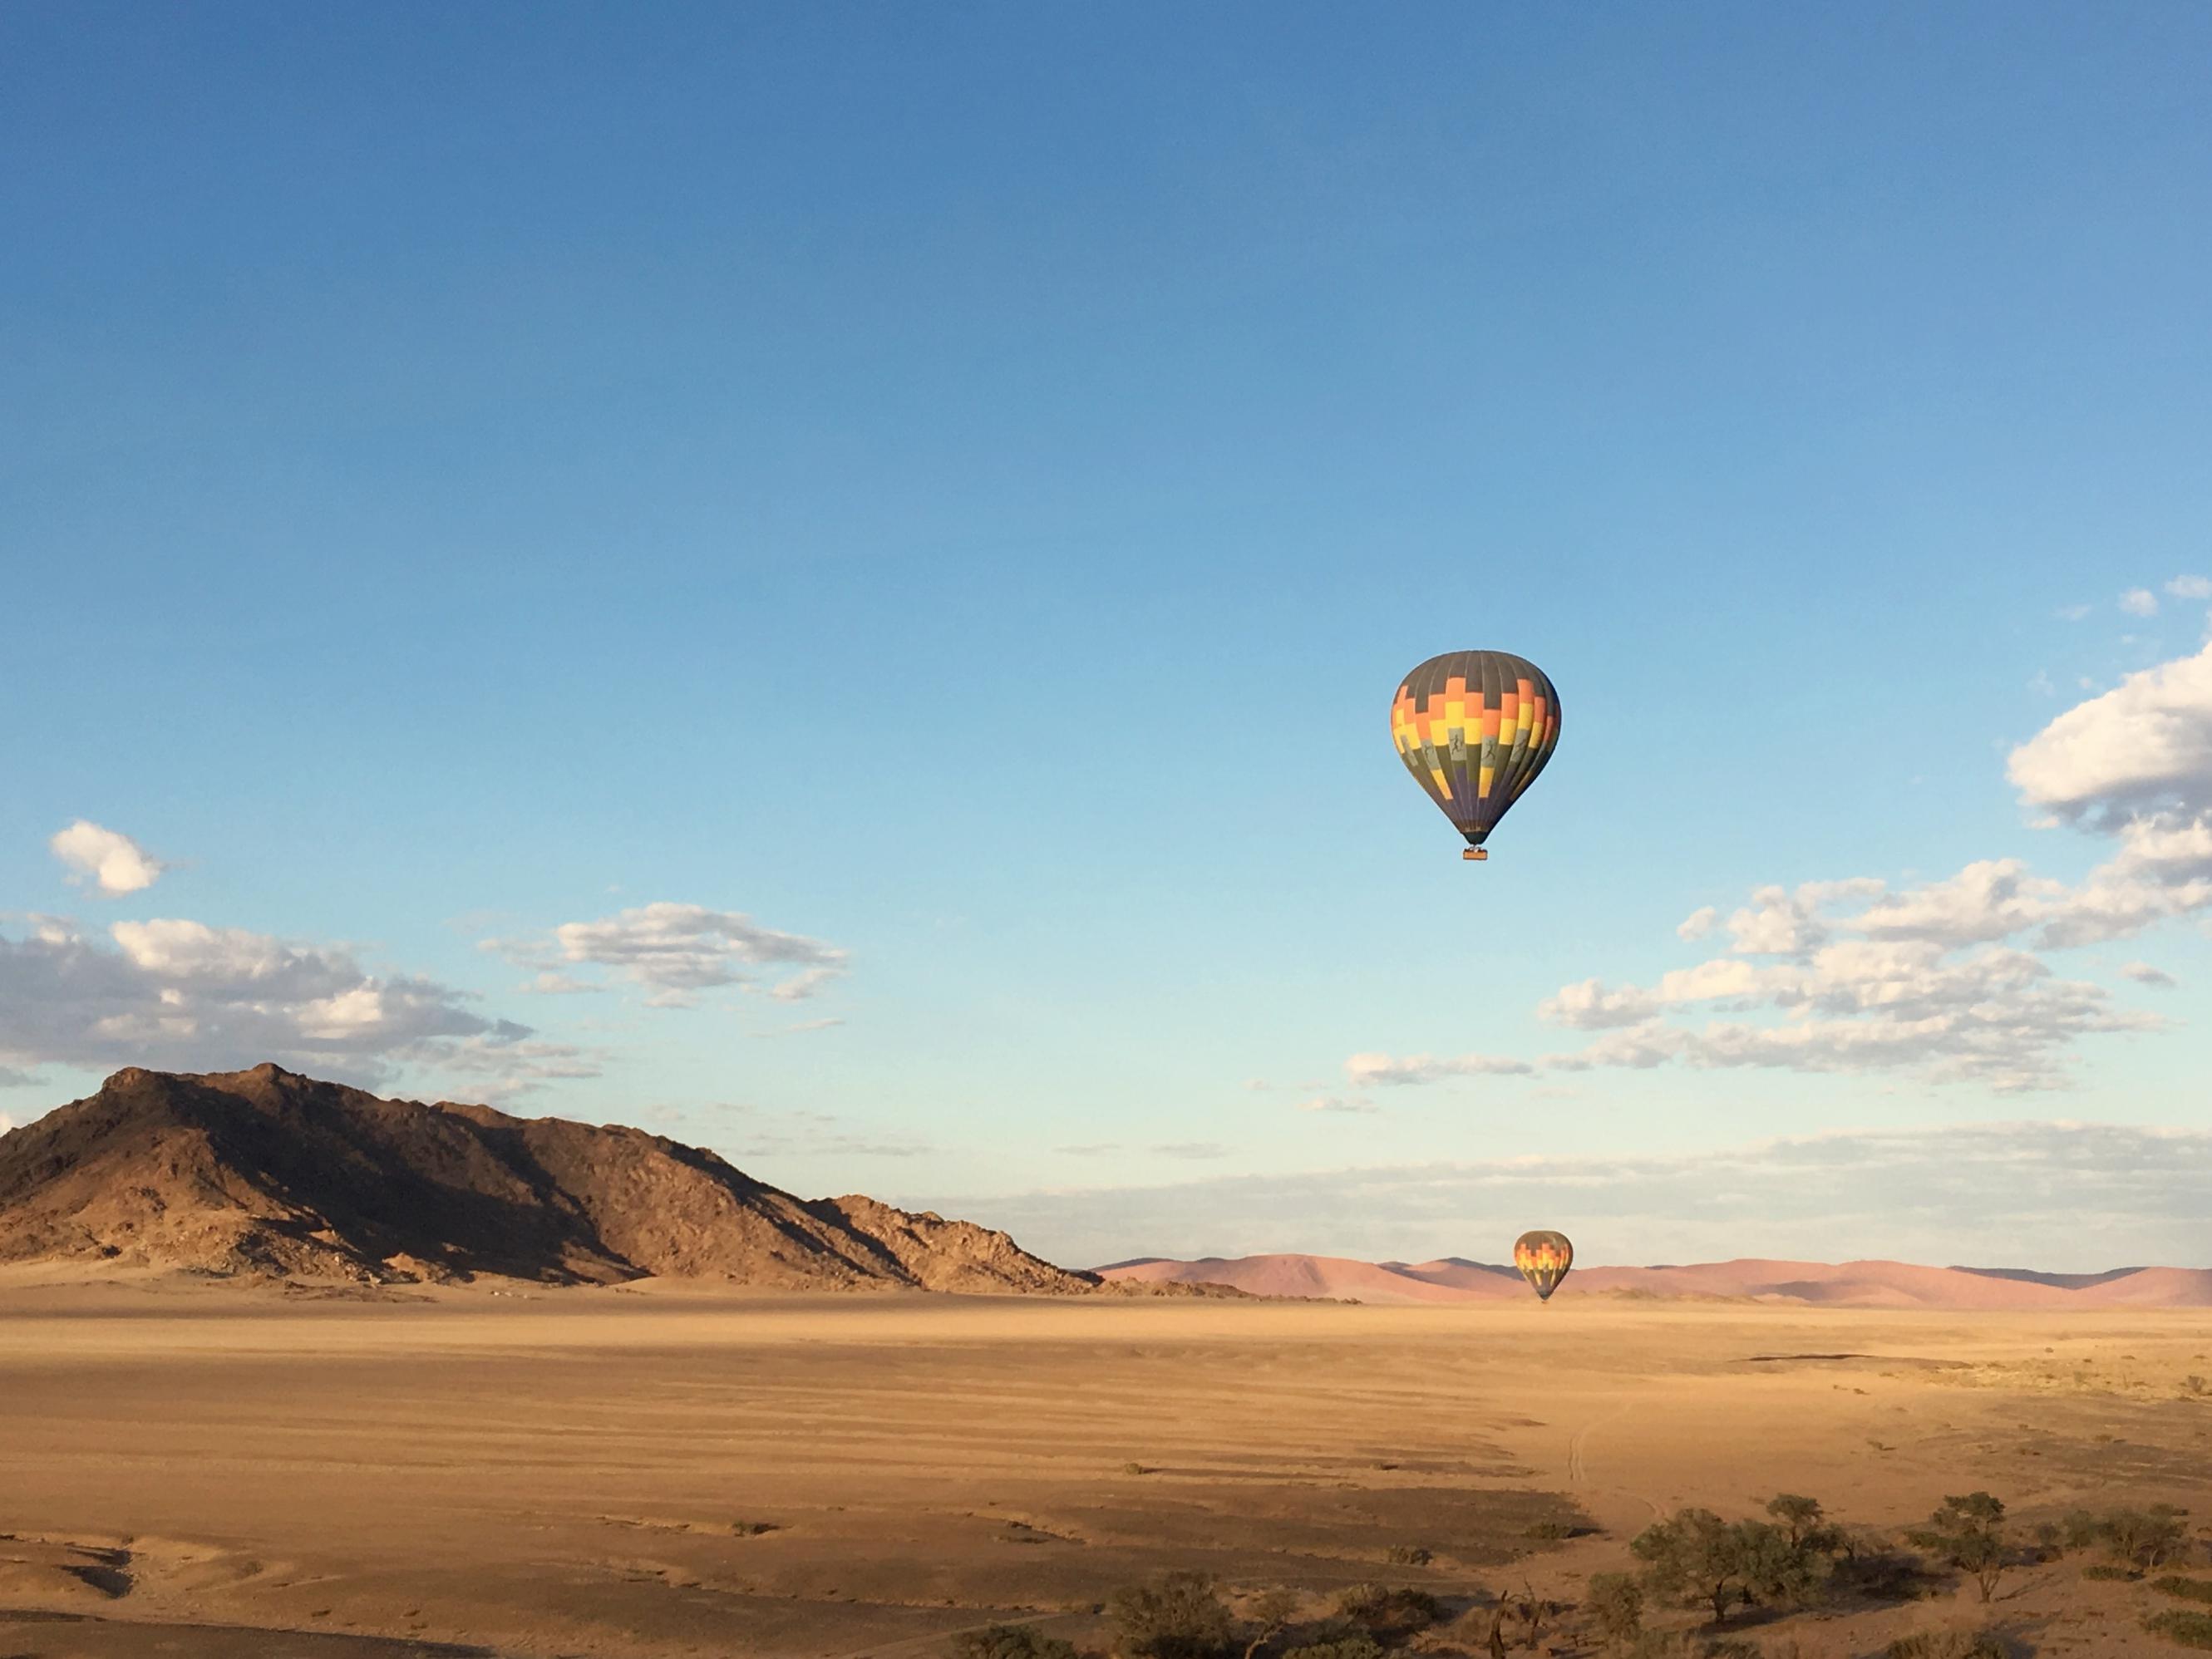 Survoler le désert du Namib en montgolfière…